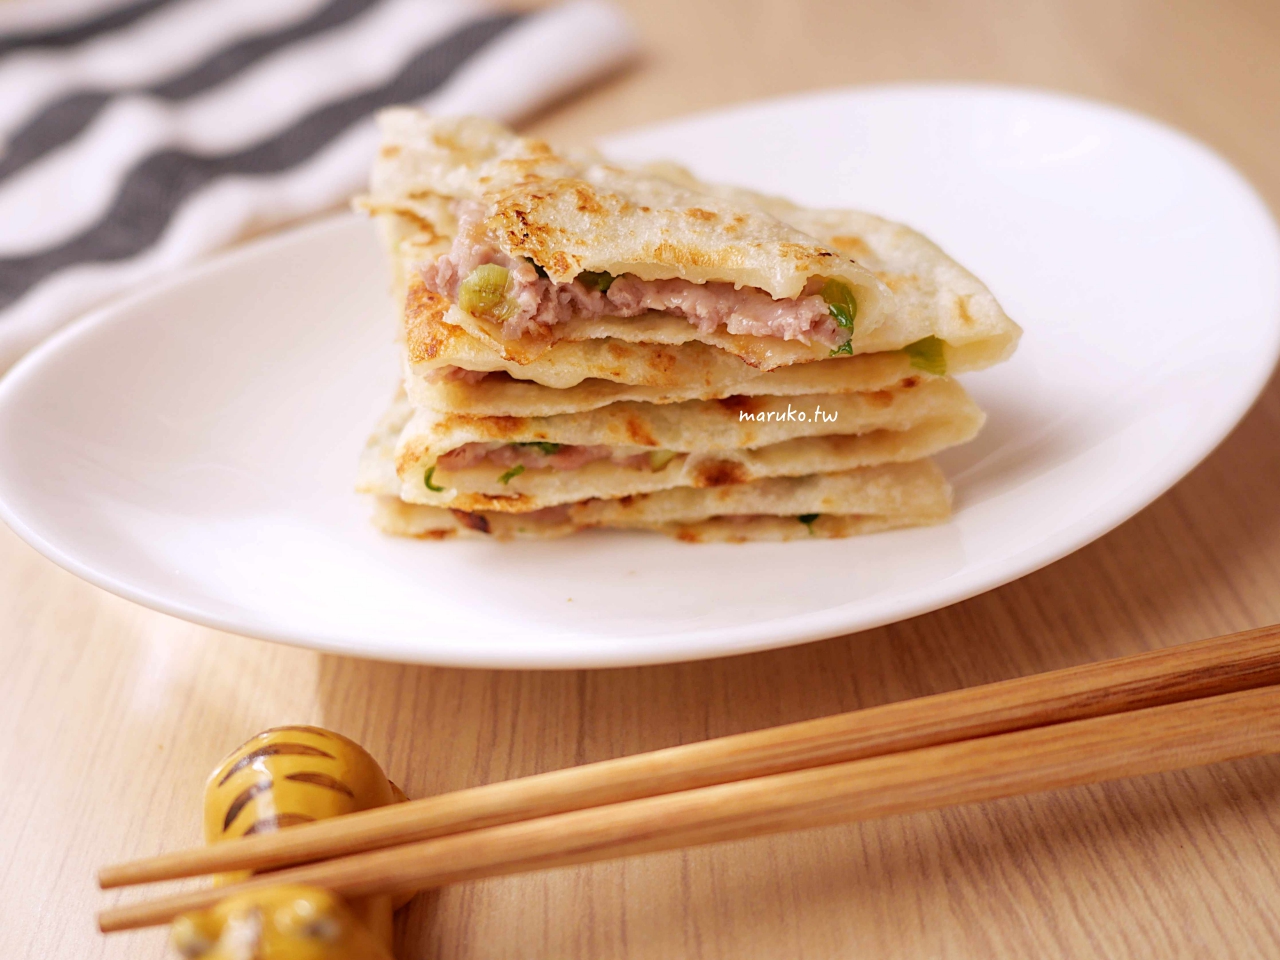 【食譜】蔥肉餅 南台灣人氣最高的攤販小吃 一學就會的中式點心